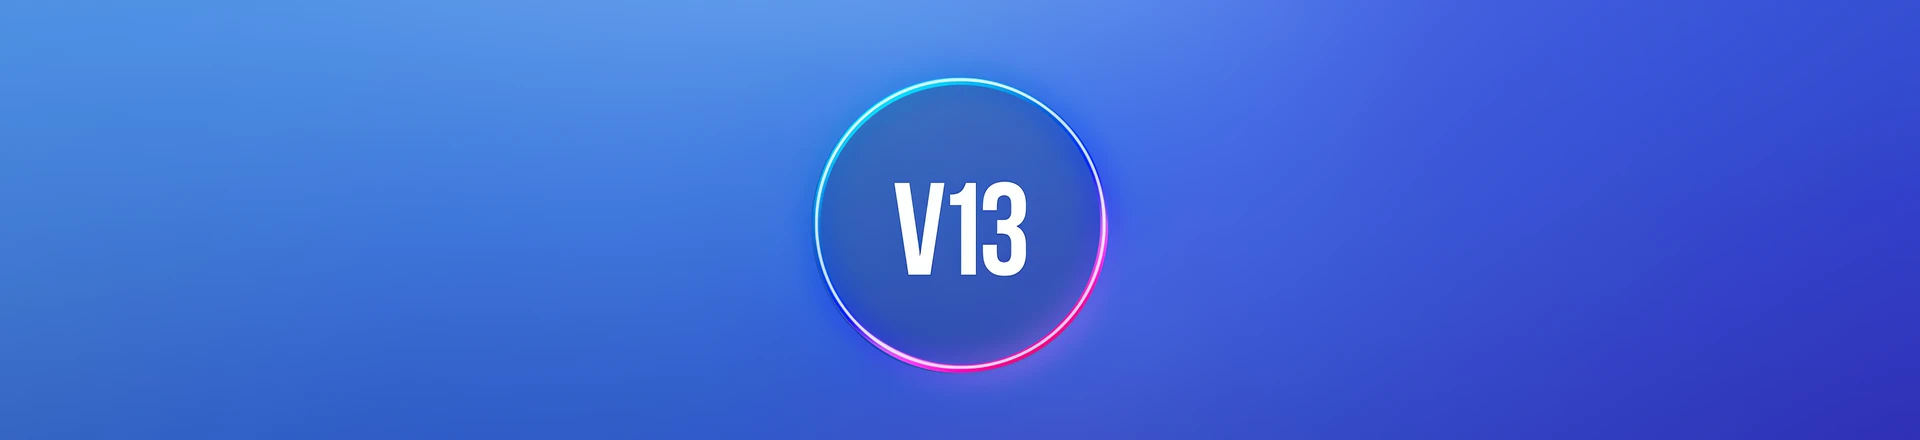 Waves aktualizuje SoundGrid do wersji V13